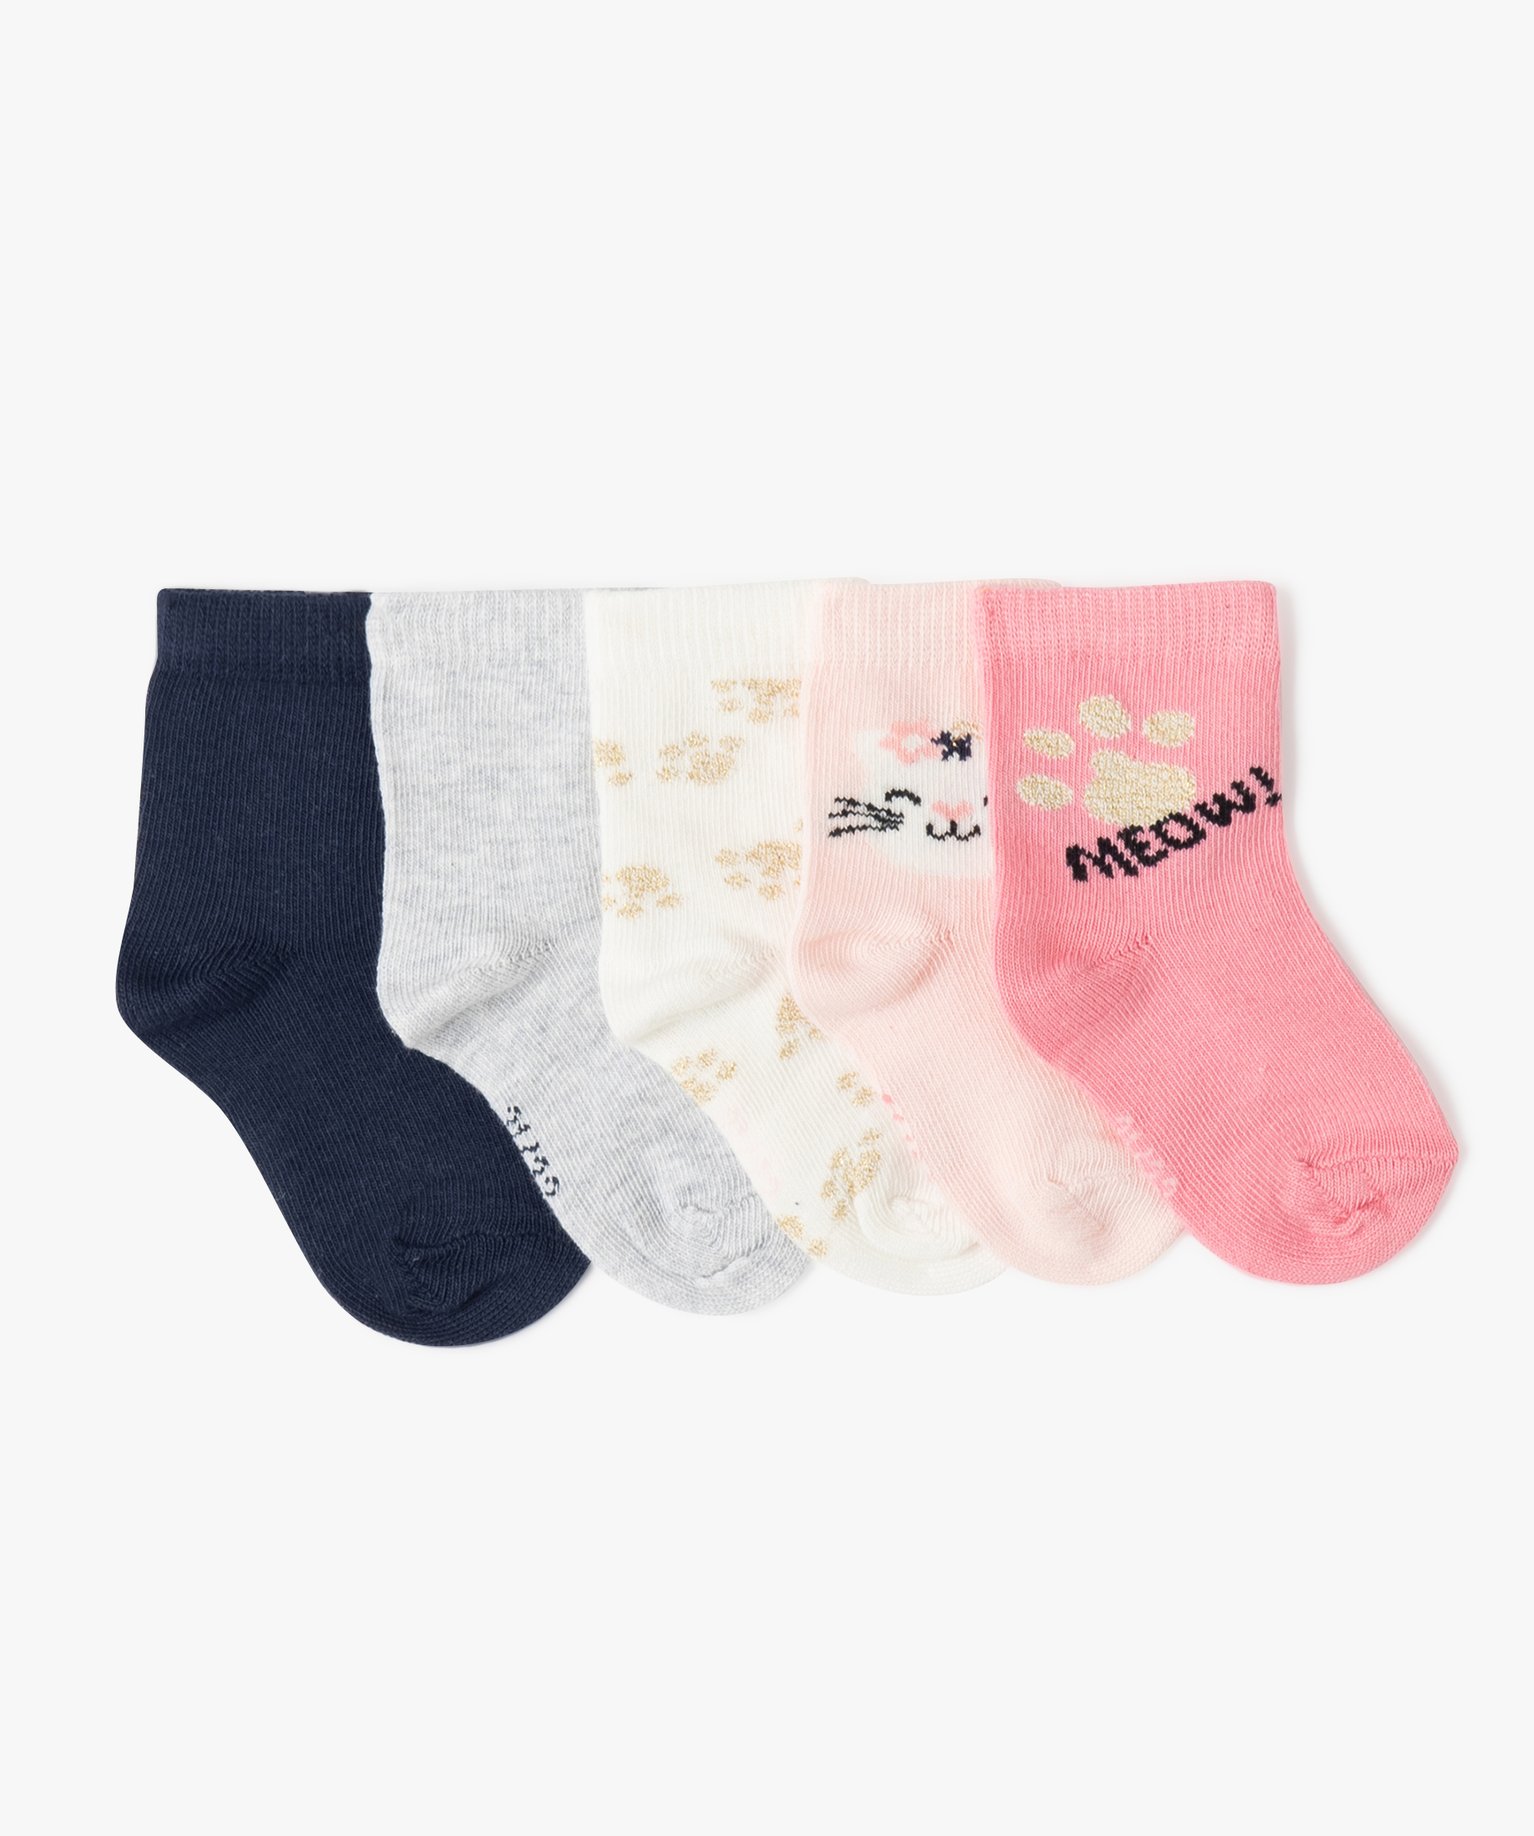 chaussettes bebe fille imprime chat (lot de 5) rose chaussettes